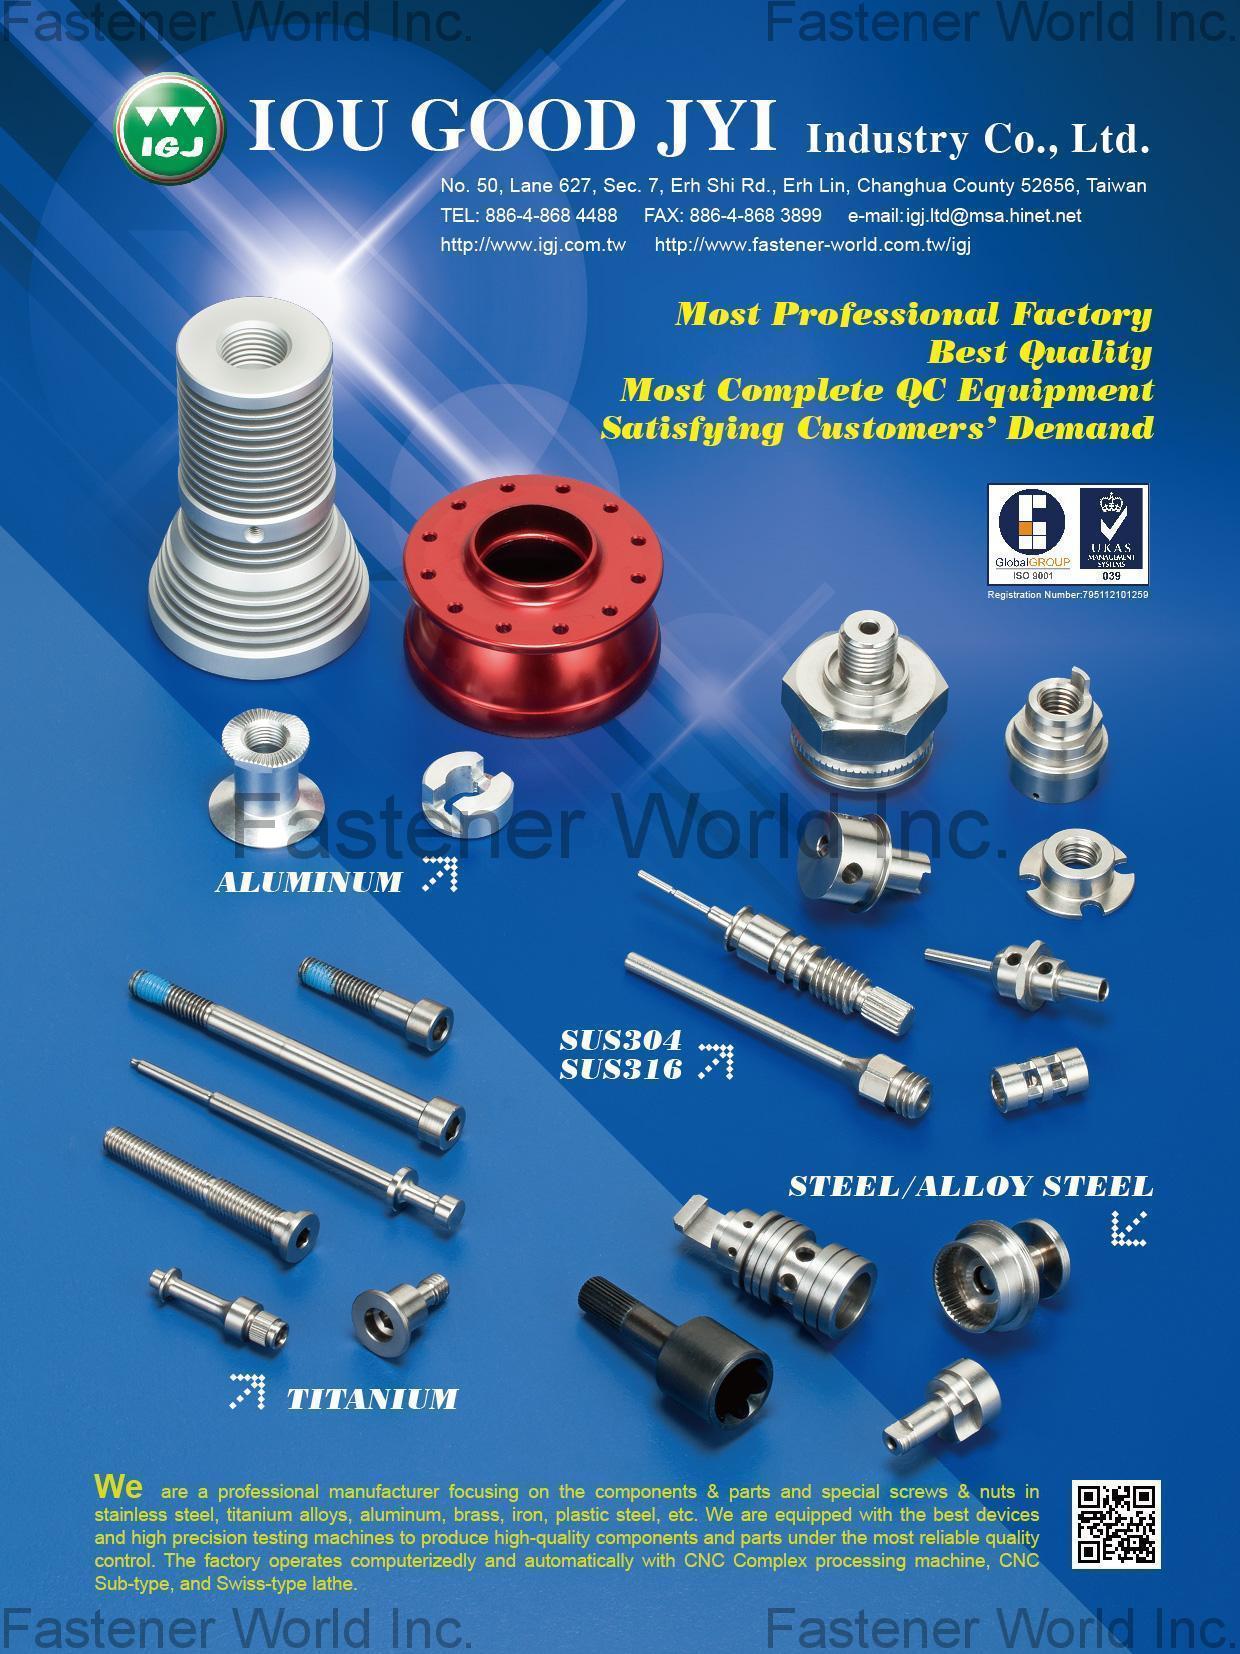 IOU GOOD JYI INDUSTRY CO., LTD.  , CNC precision parts processing , CNC parts, CNC lathe